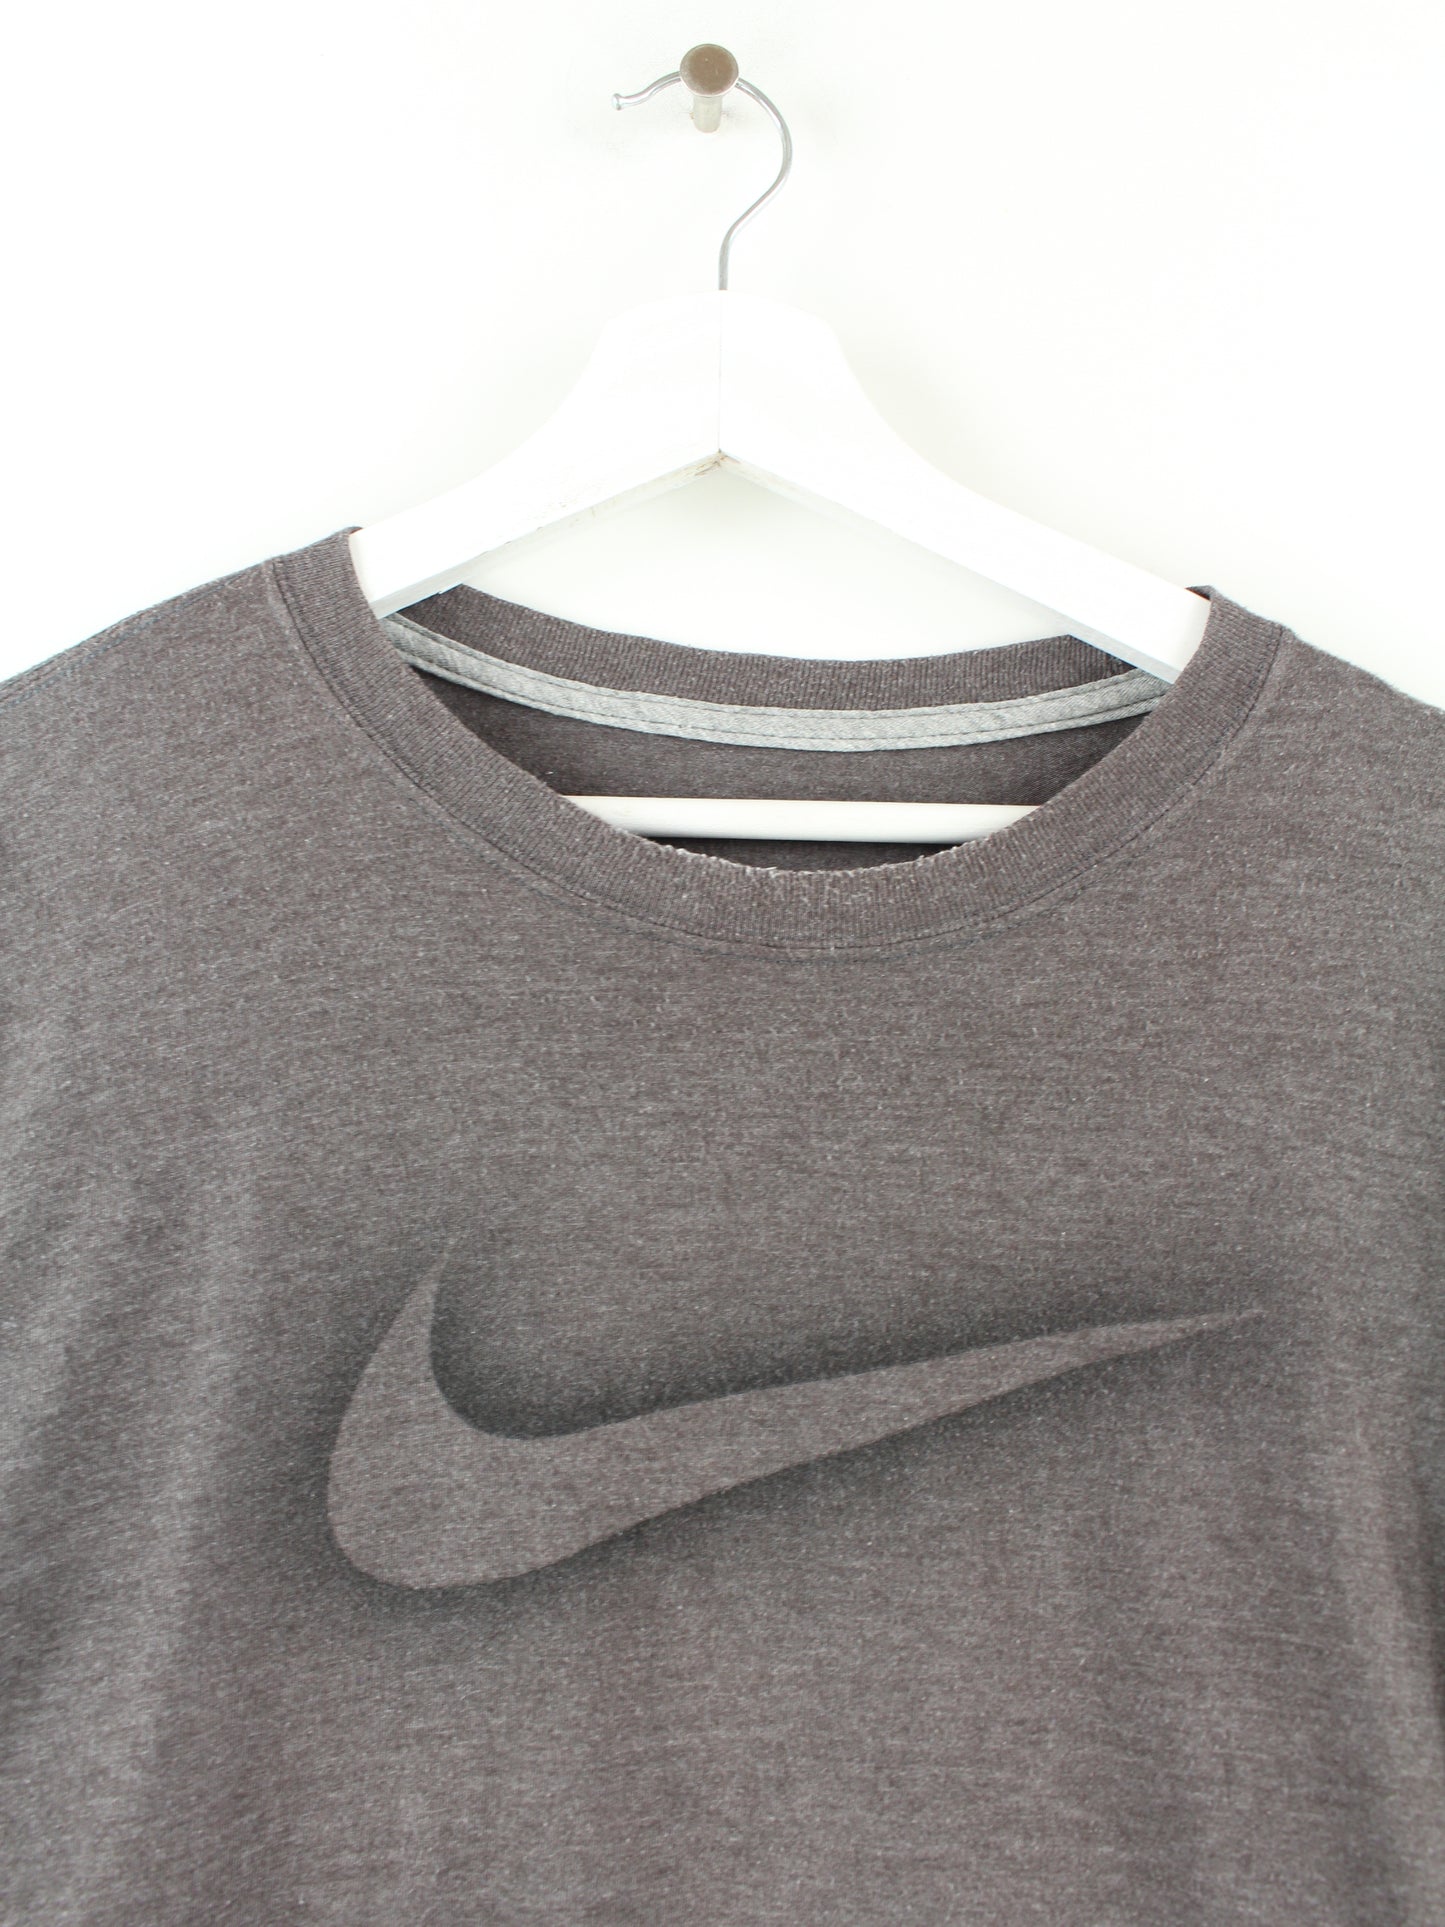 Nike Sweatshirt Grau XXL